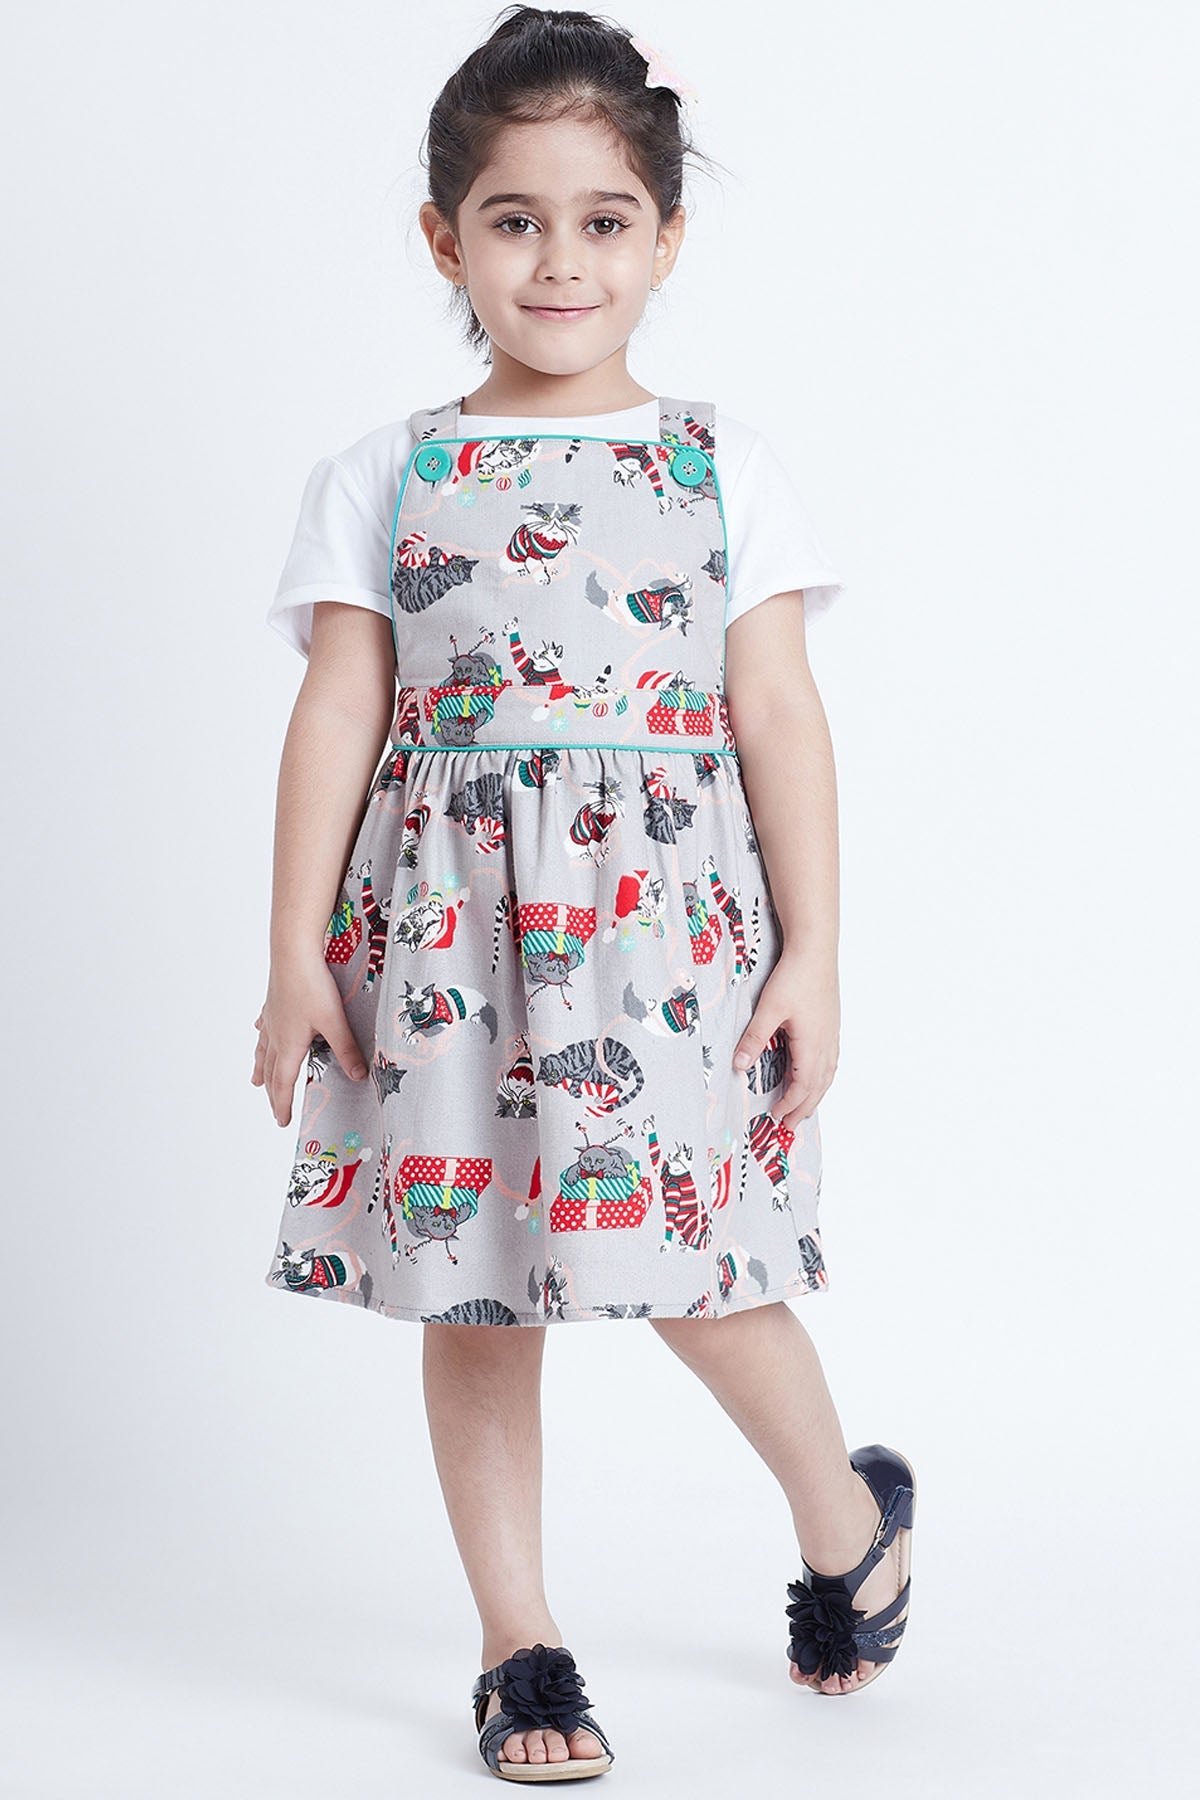 Bohobi Grey Cat Printed Straps Dress for kids online at ScrollnShops